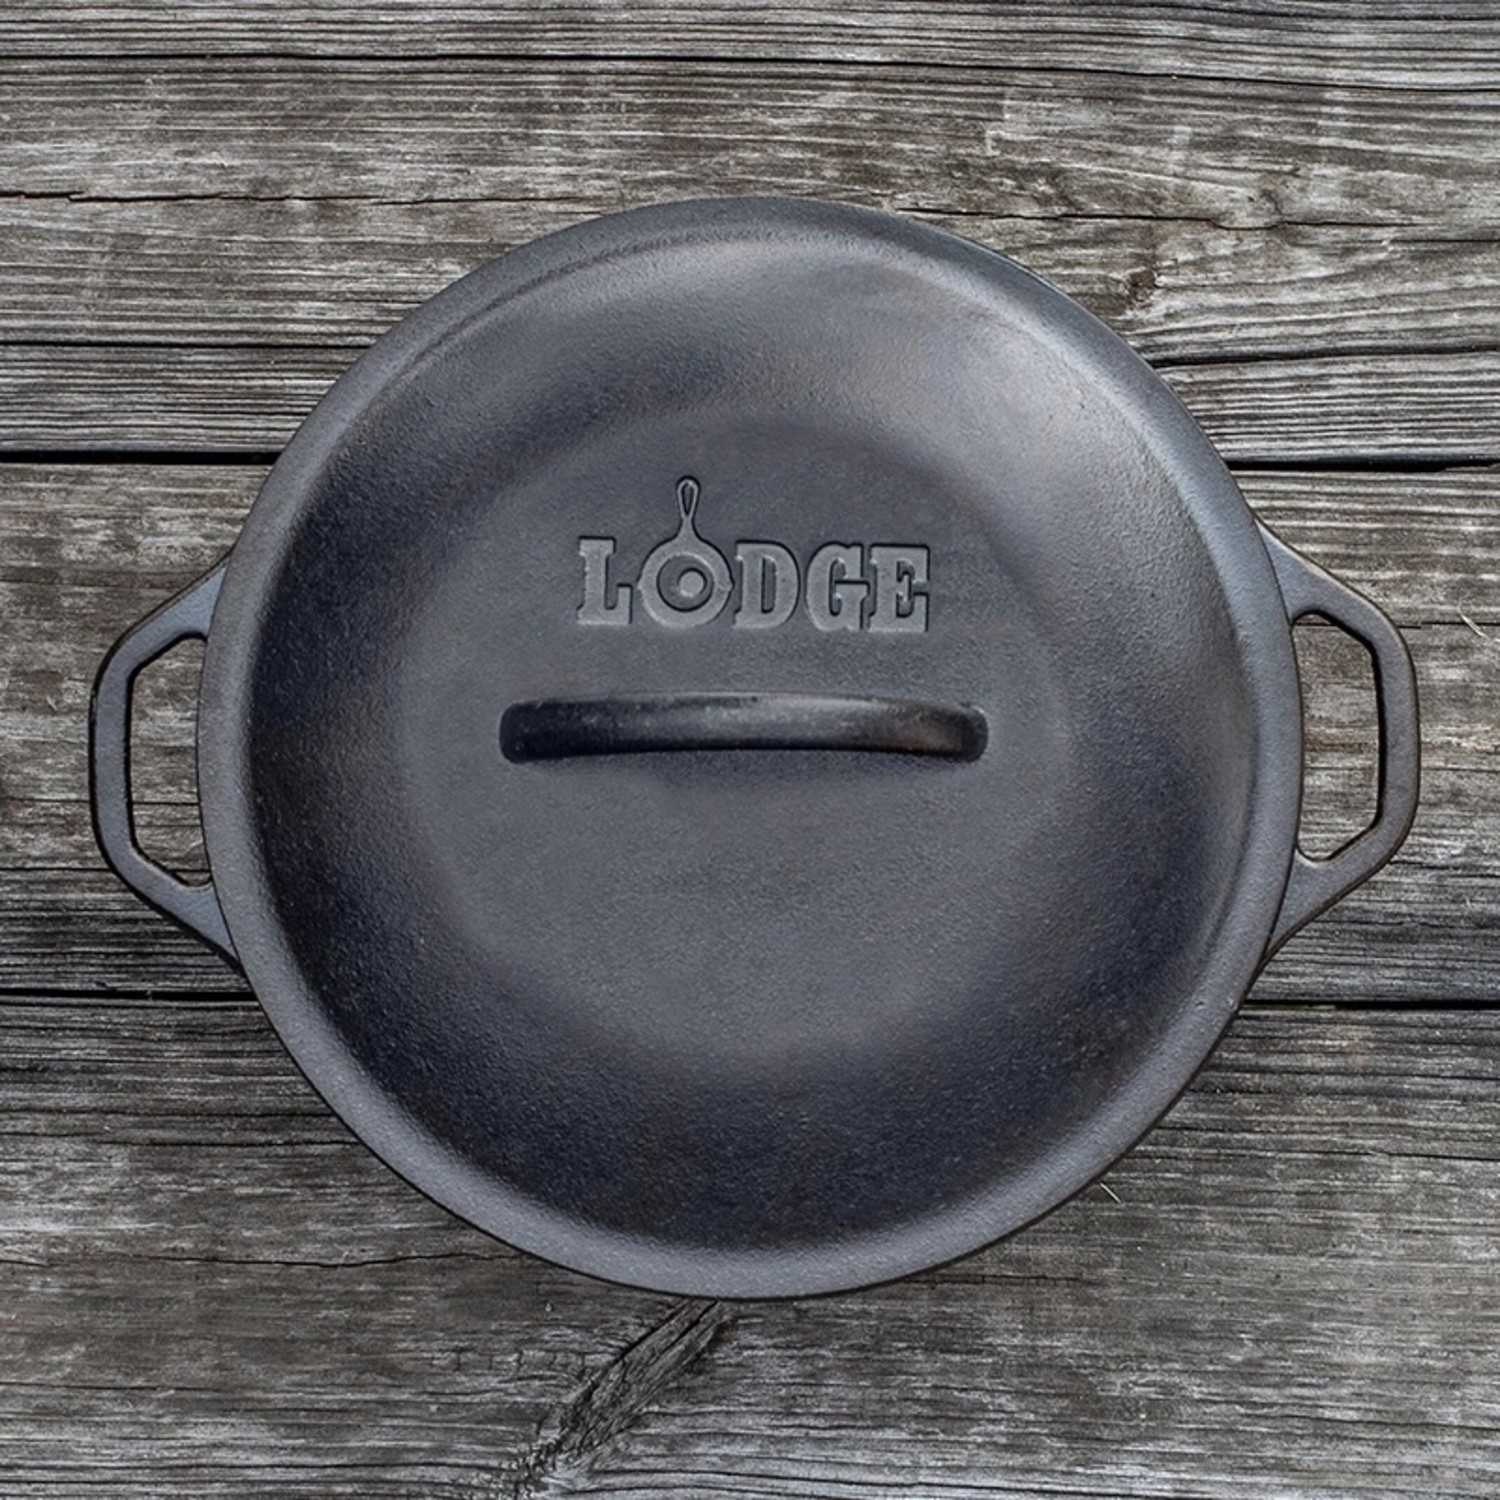 Lodge 5qt. Cast Iron Dutch Oven + Reviews